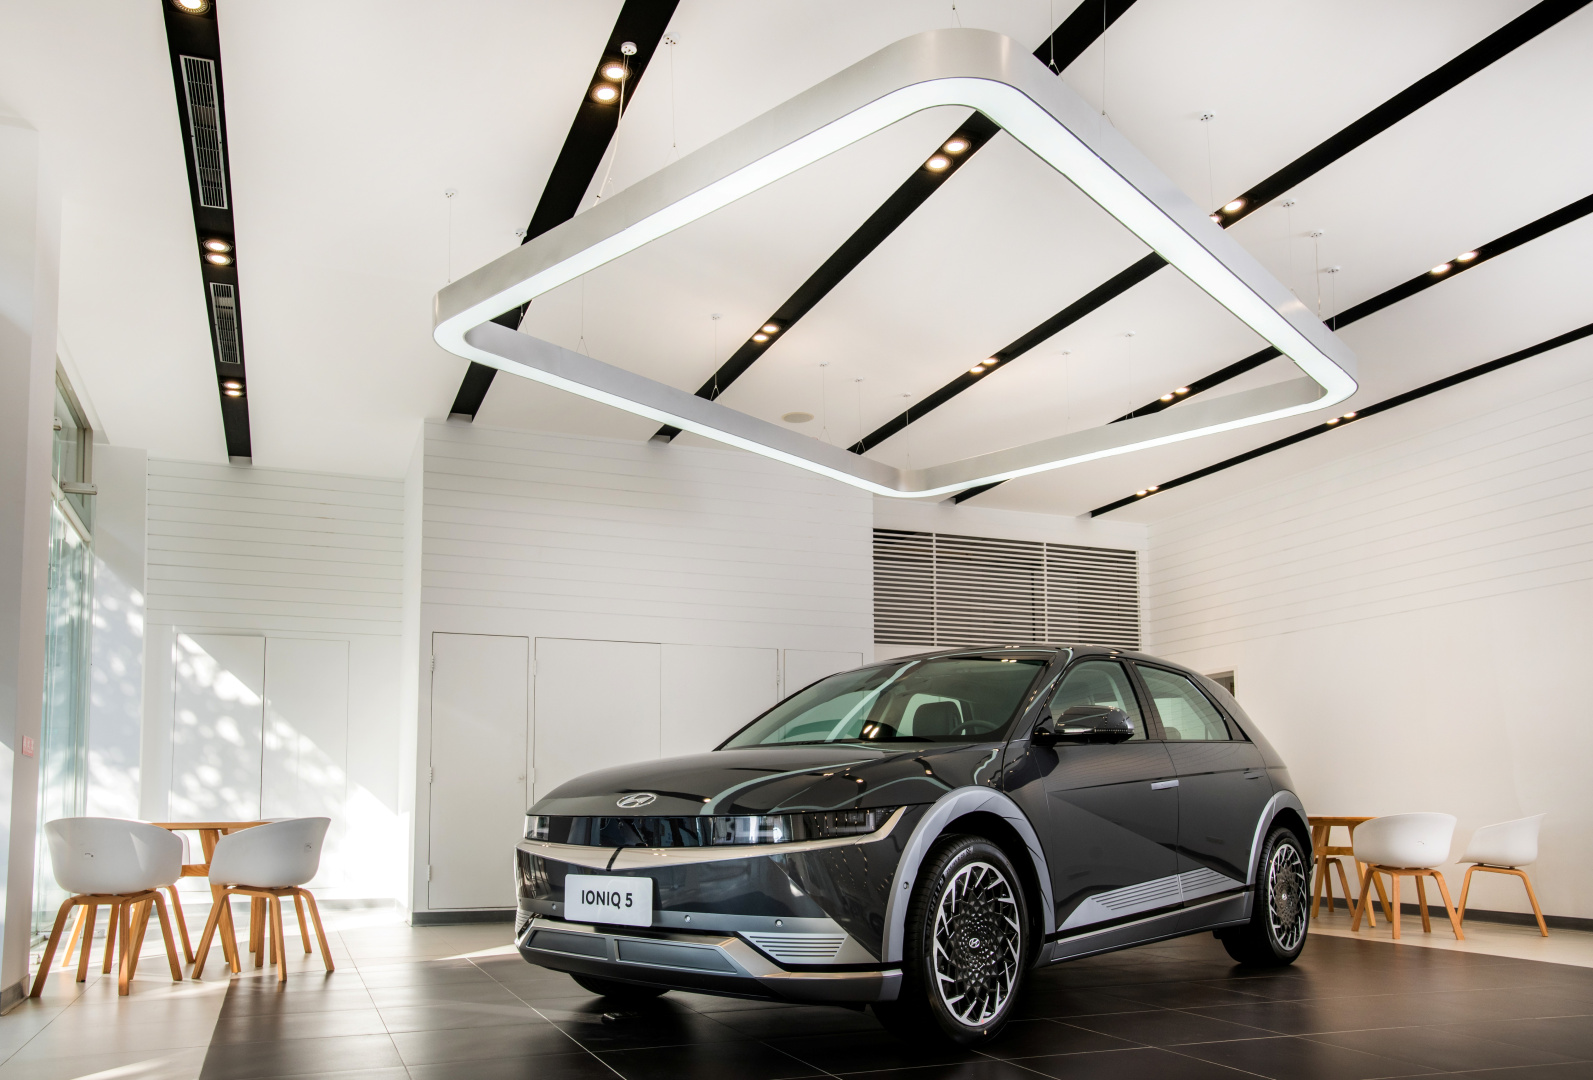 SMALL_1.HYUNDAI汽車原廠最新GDSI 2.0展示中心設計規範，以簡約俐落與純白基調的視覺元素，打造創新意象與舒適放鬆的賞車與服務空間